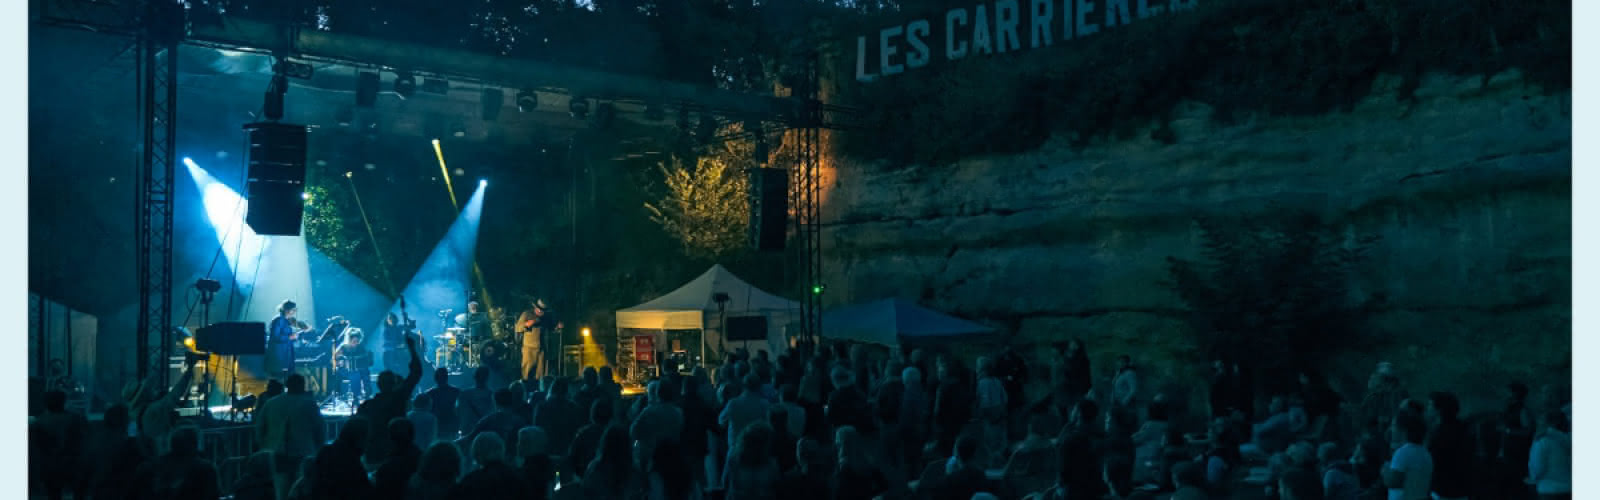 Festival Les Carrières Saint-Roch